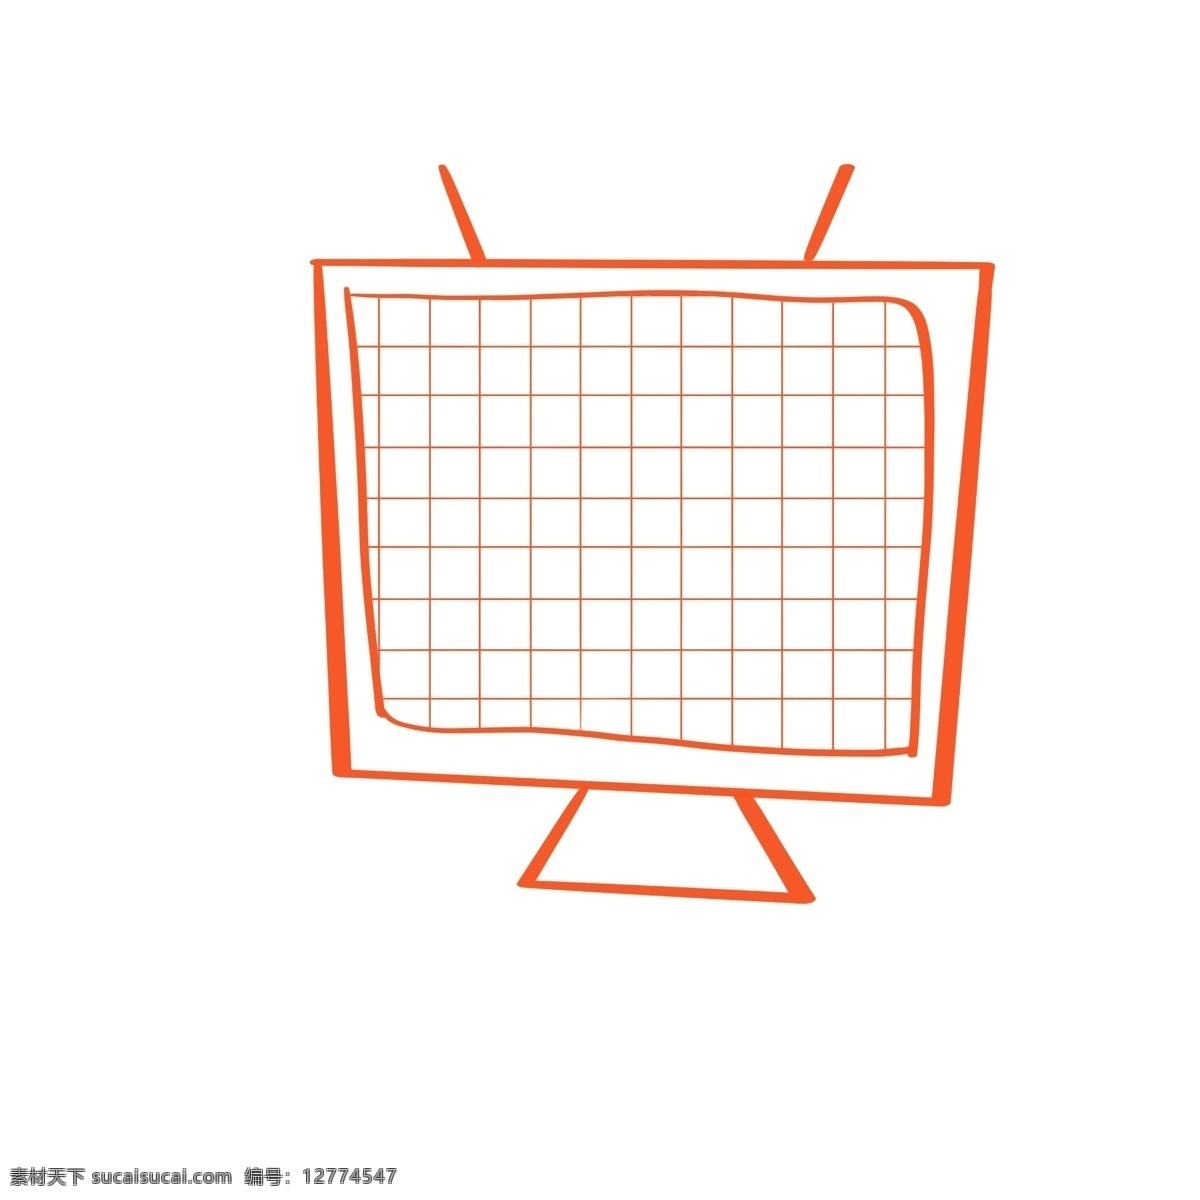 简单 对话框 红色 电视机 可爱 对话款 手绘 简约 框 条纹 简单对话框 不规则手绘 卡通手绘